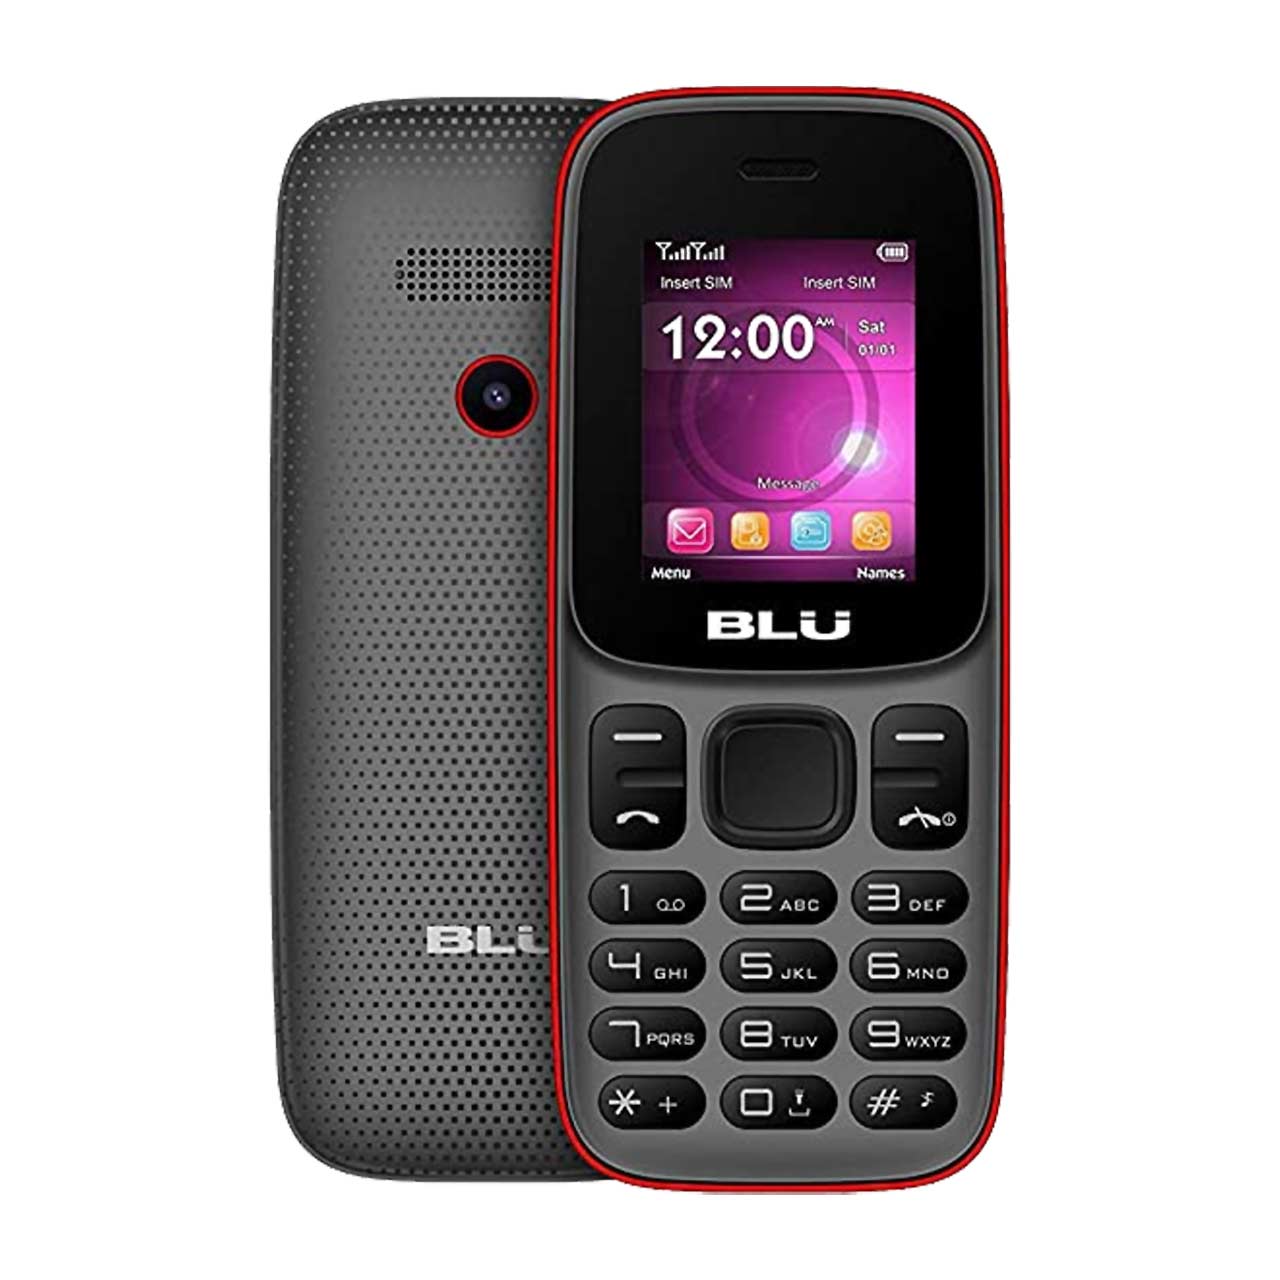  گوشی موبایل BLU مدل Z5 دو سیم کارت-خاکستری     